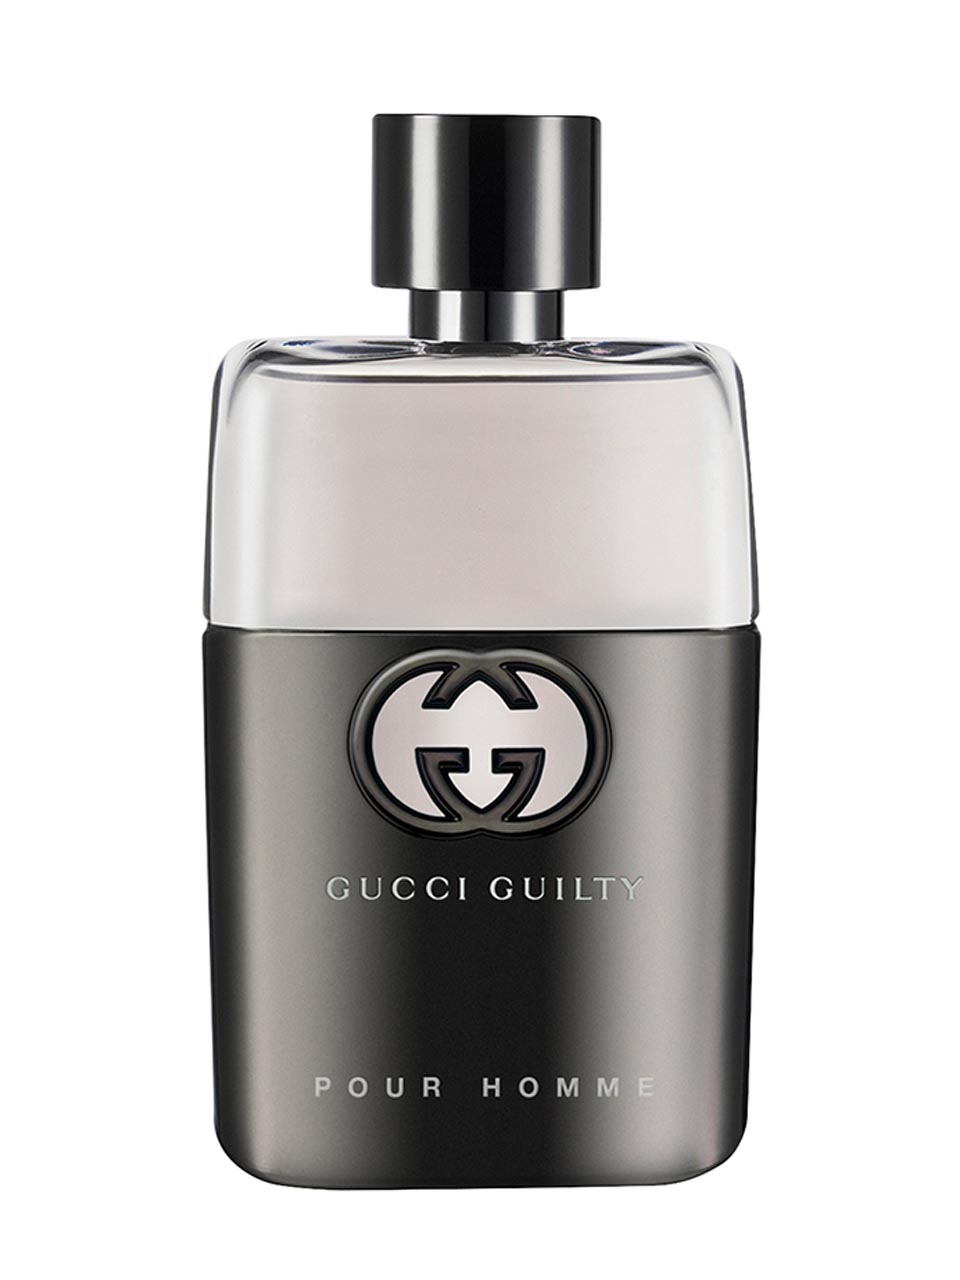 Gucci Guilty Pour Homme Eau de Toilette 50 ml null - onesize - 1